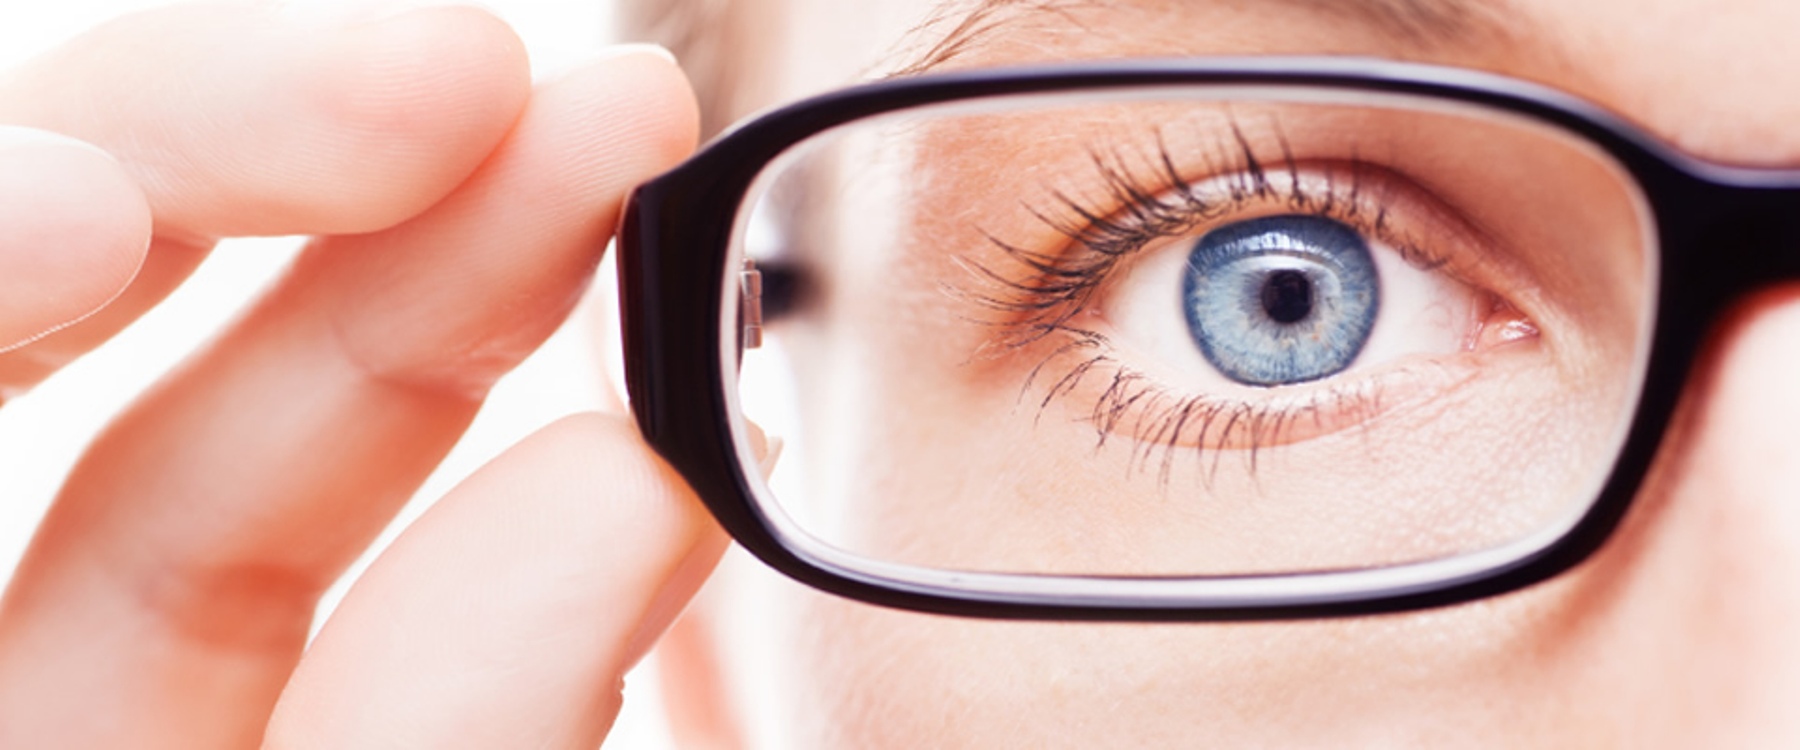 Человека с нарушением зрения называют. Миопия близорукость глаз. Миопия гиперметропия астигматизм. Очки для коррекции миопии. Очки для зрения близорукость.